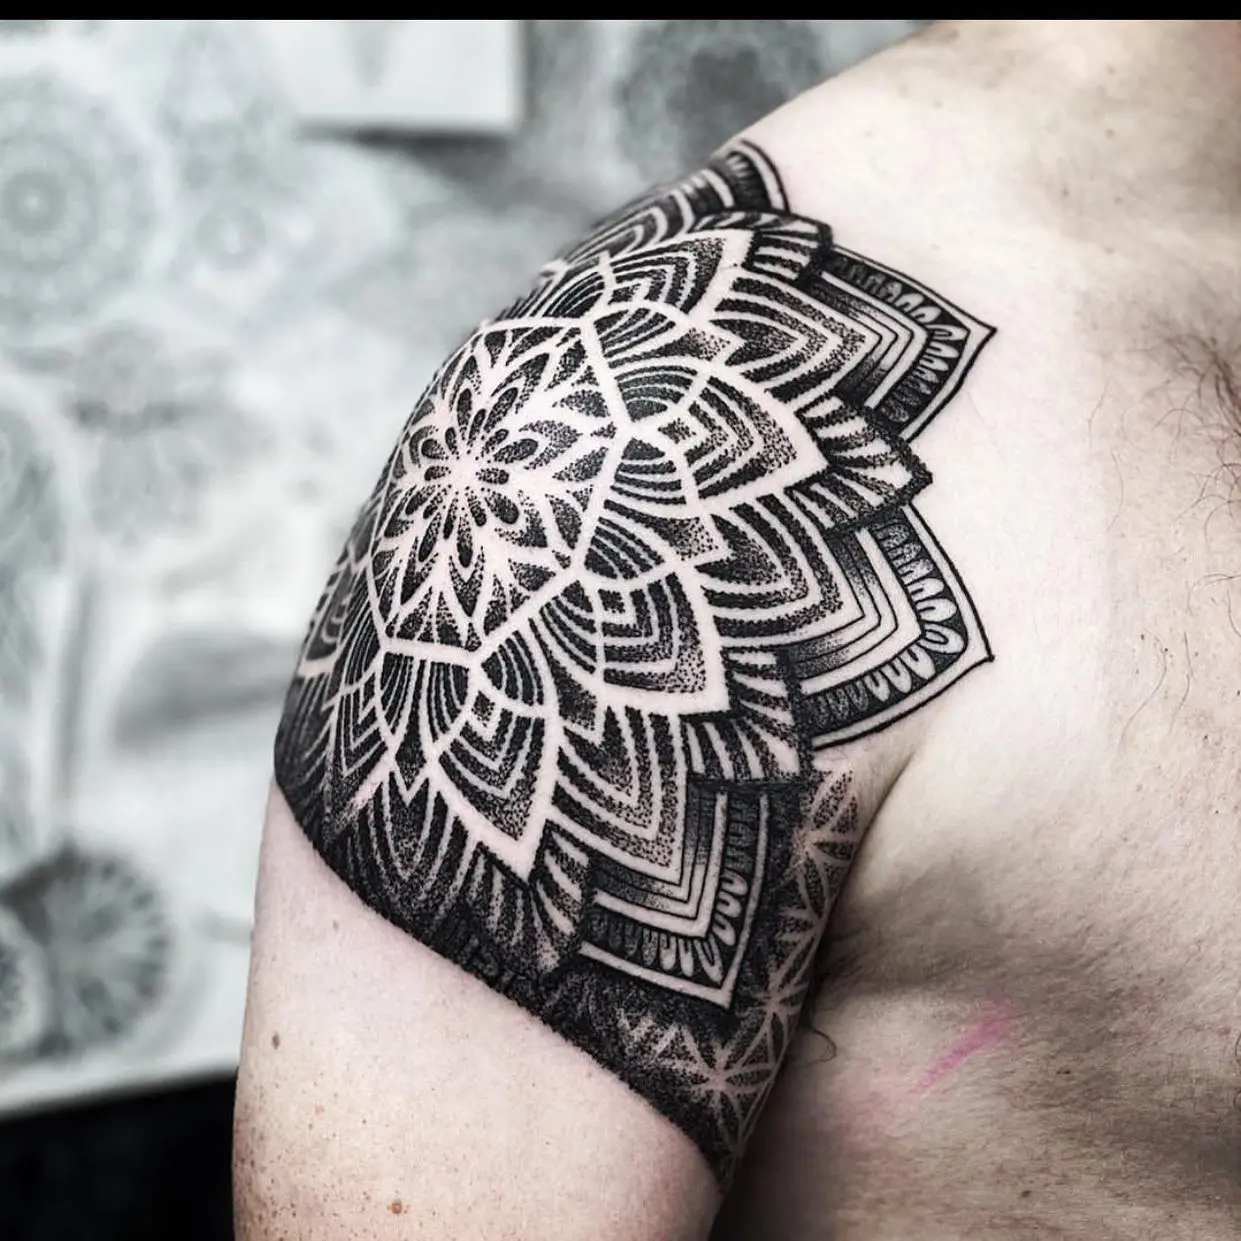 Deity Tattoo, Geometric Tattoos, Blackwork and dotwork tattoos in london